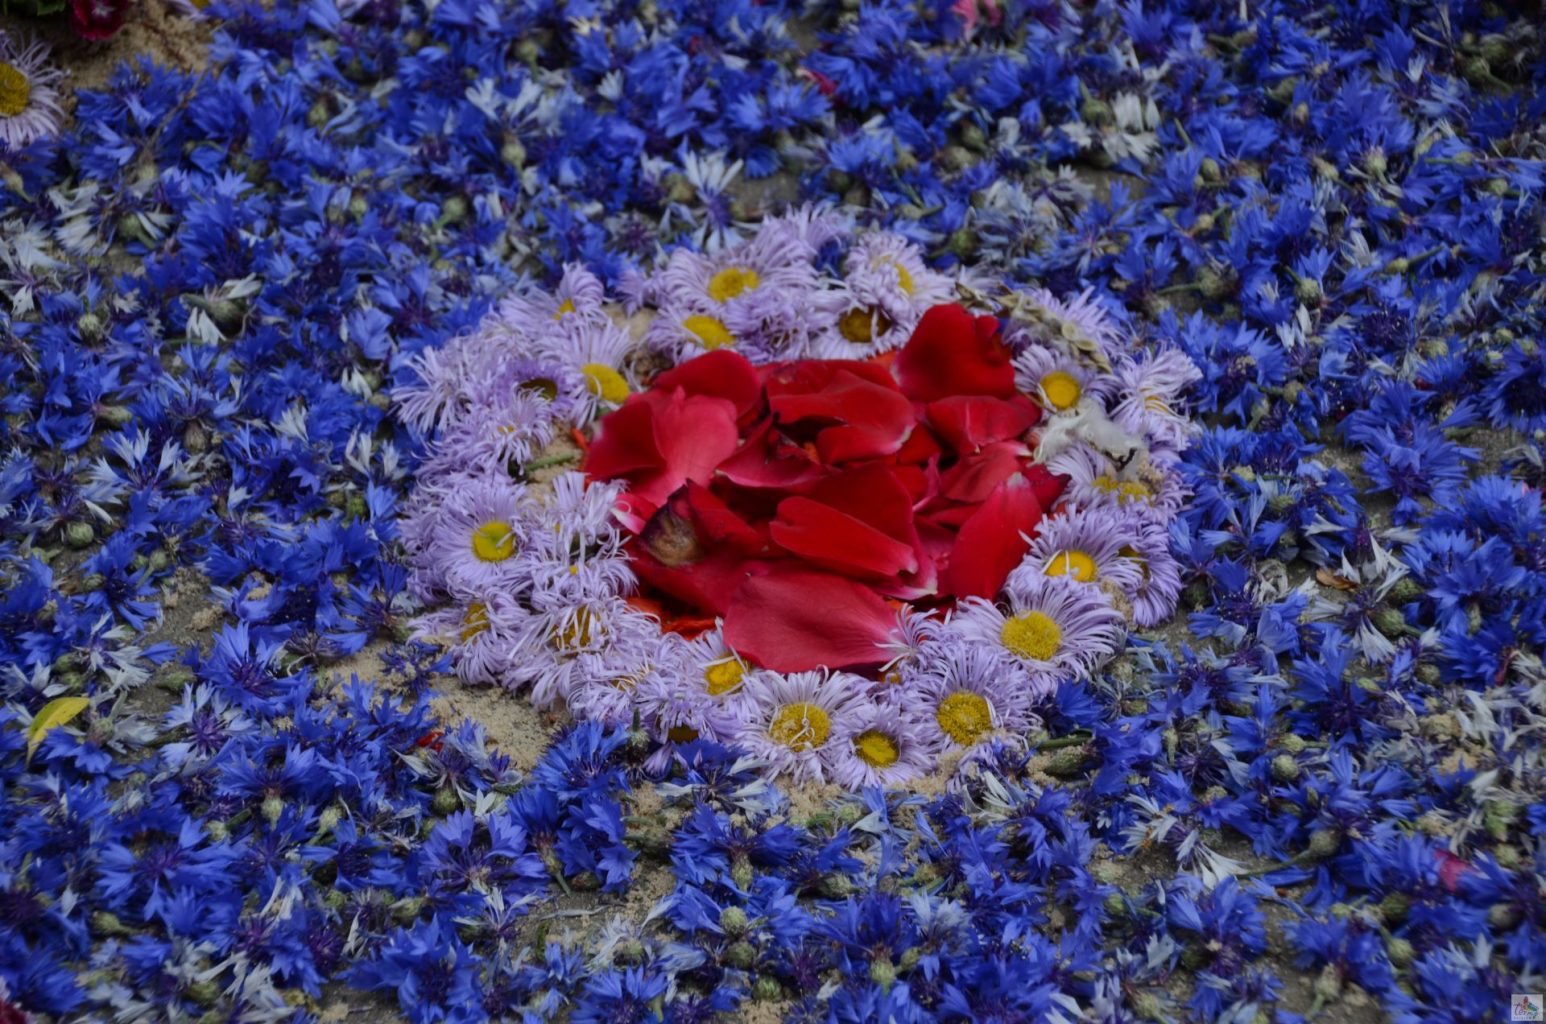 Obraz ułożony na ziemi z żywych kwiatów